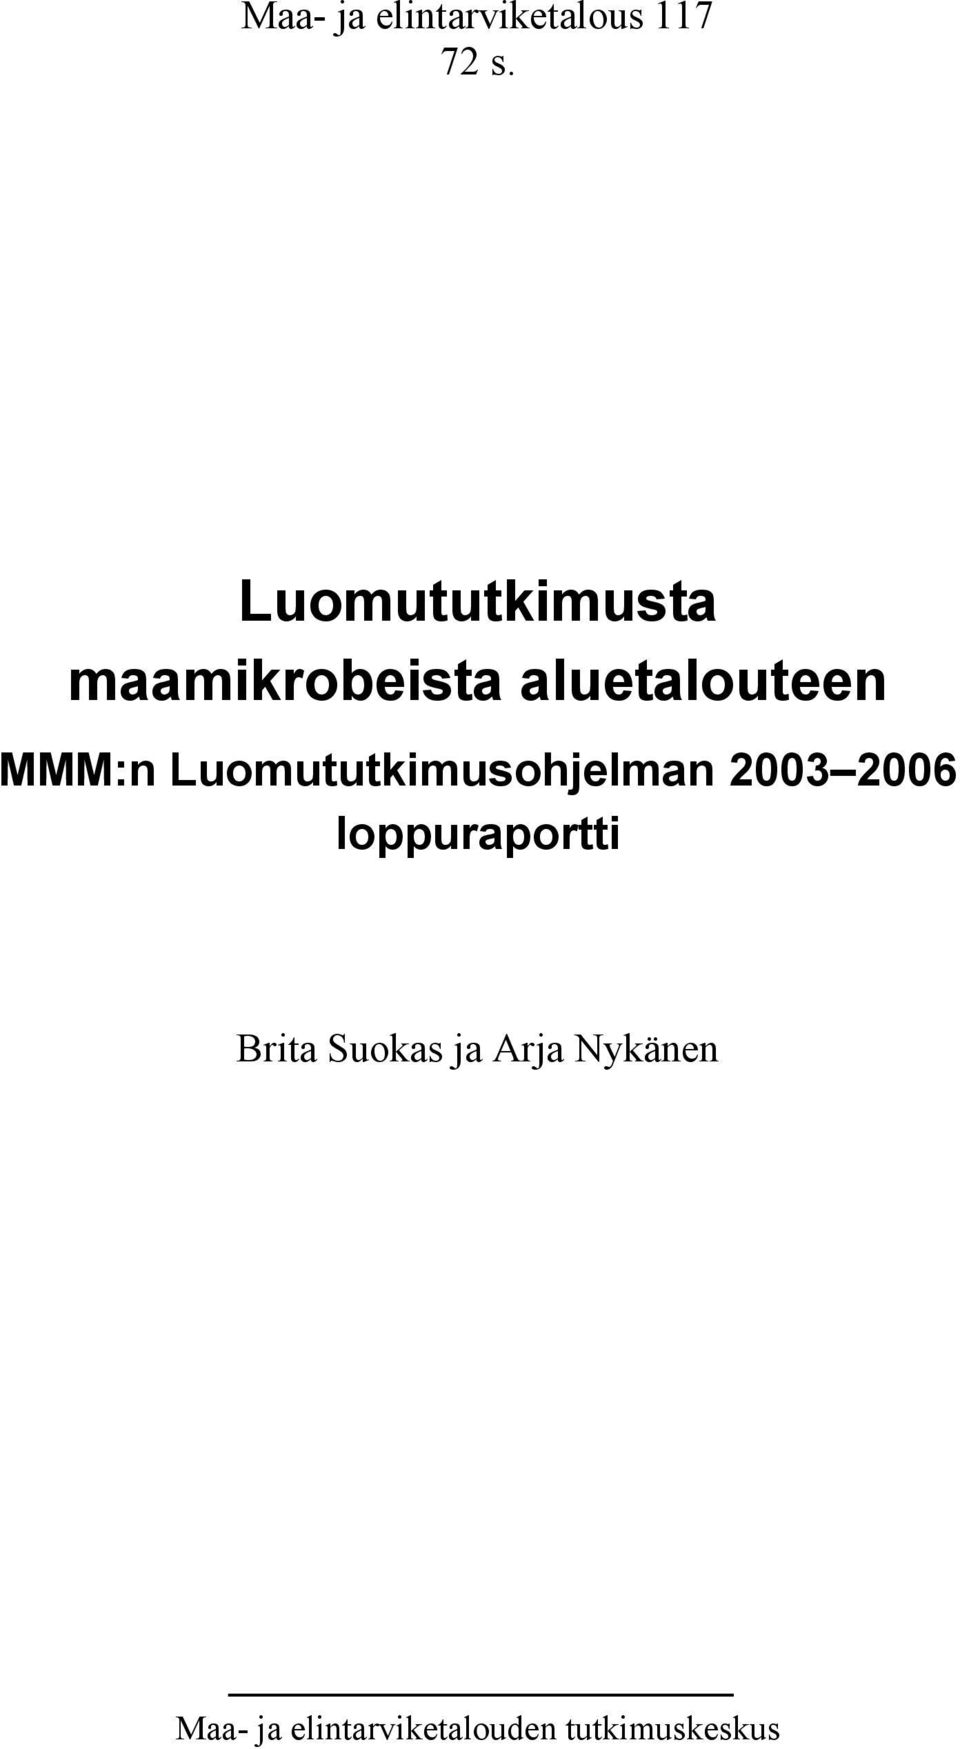 Luomututkimusohjelman 2003 2006 loppuraportti